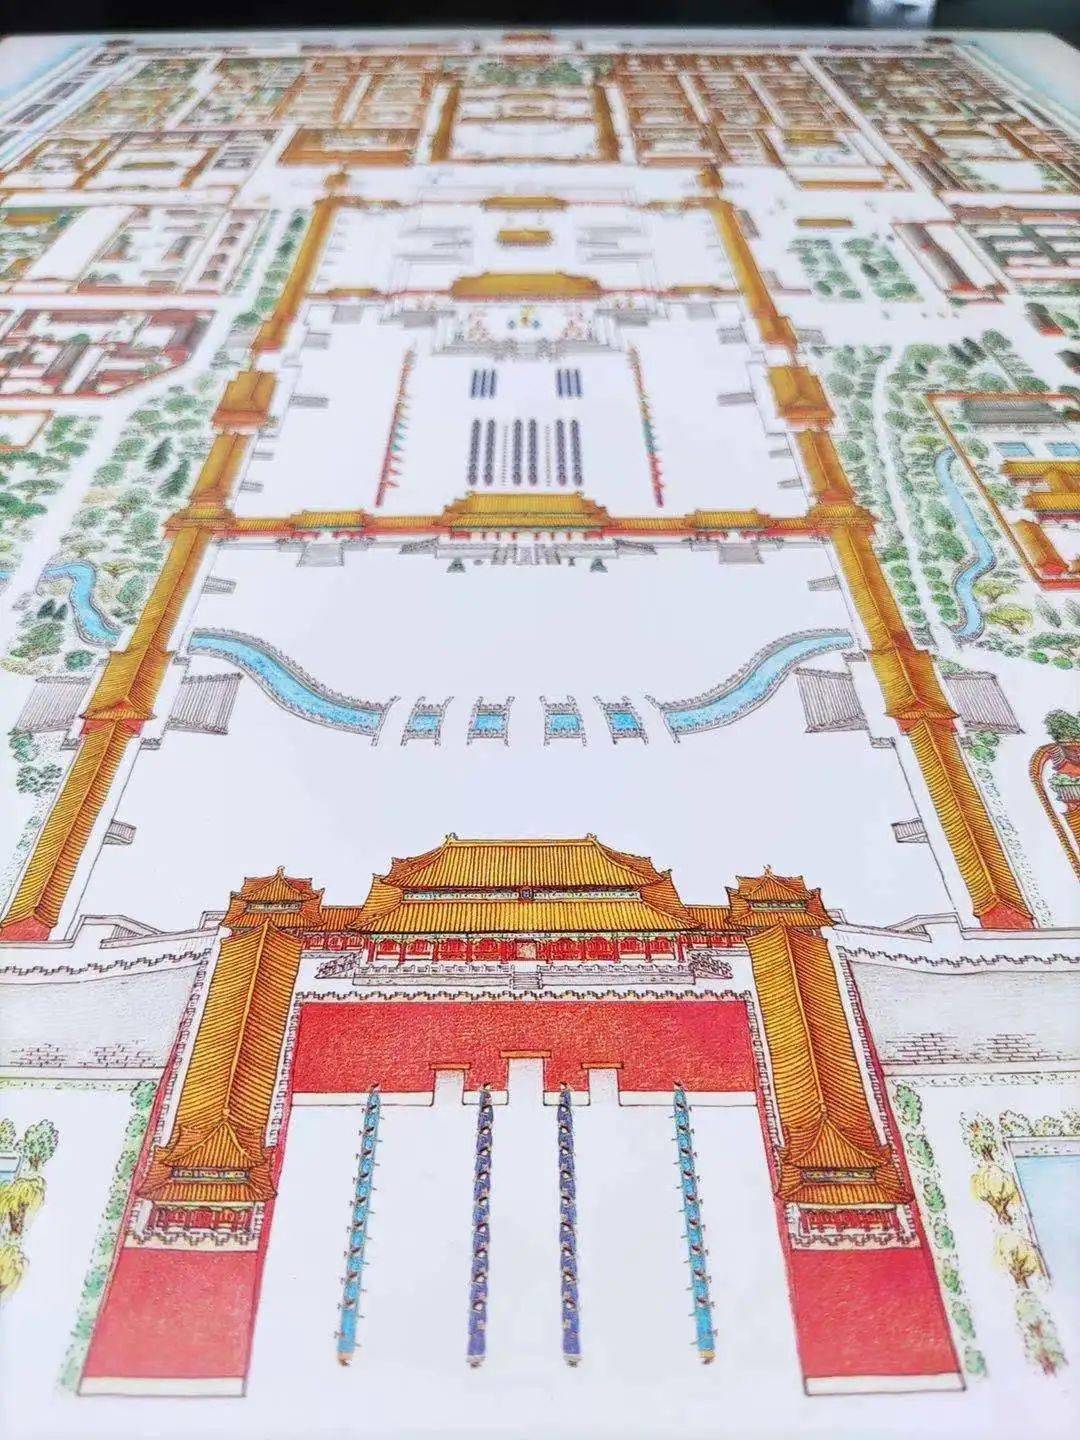 故宫平面图(北京故宫旅游地图) - 聚集快讯 - 聚集号